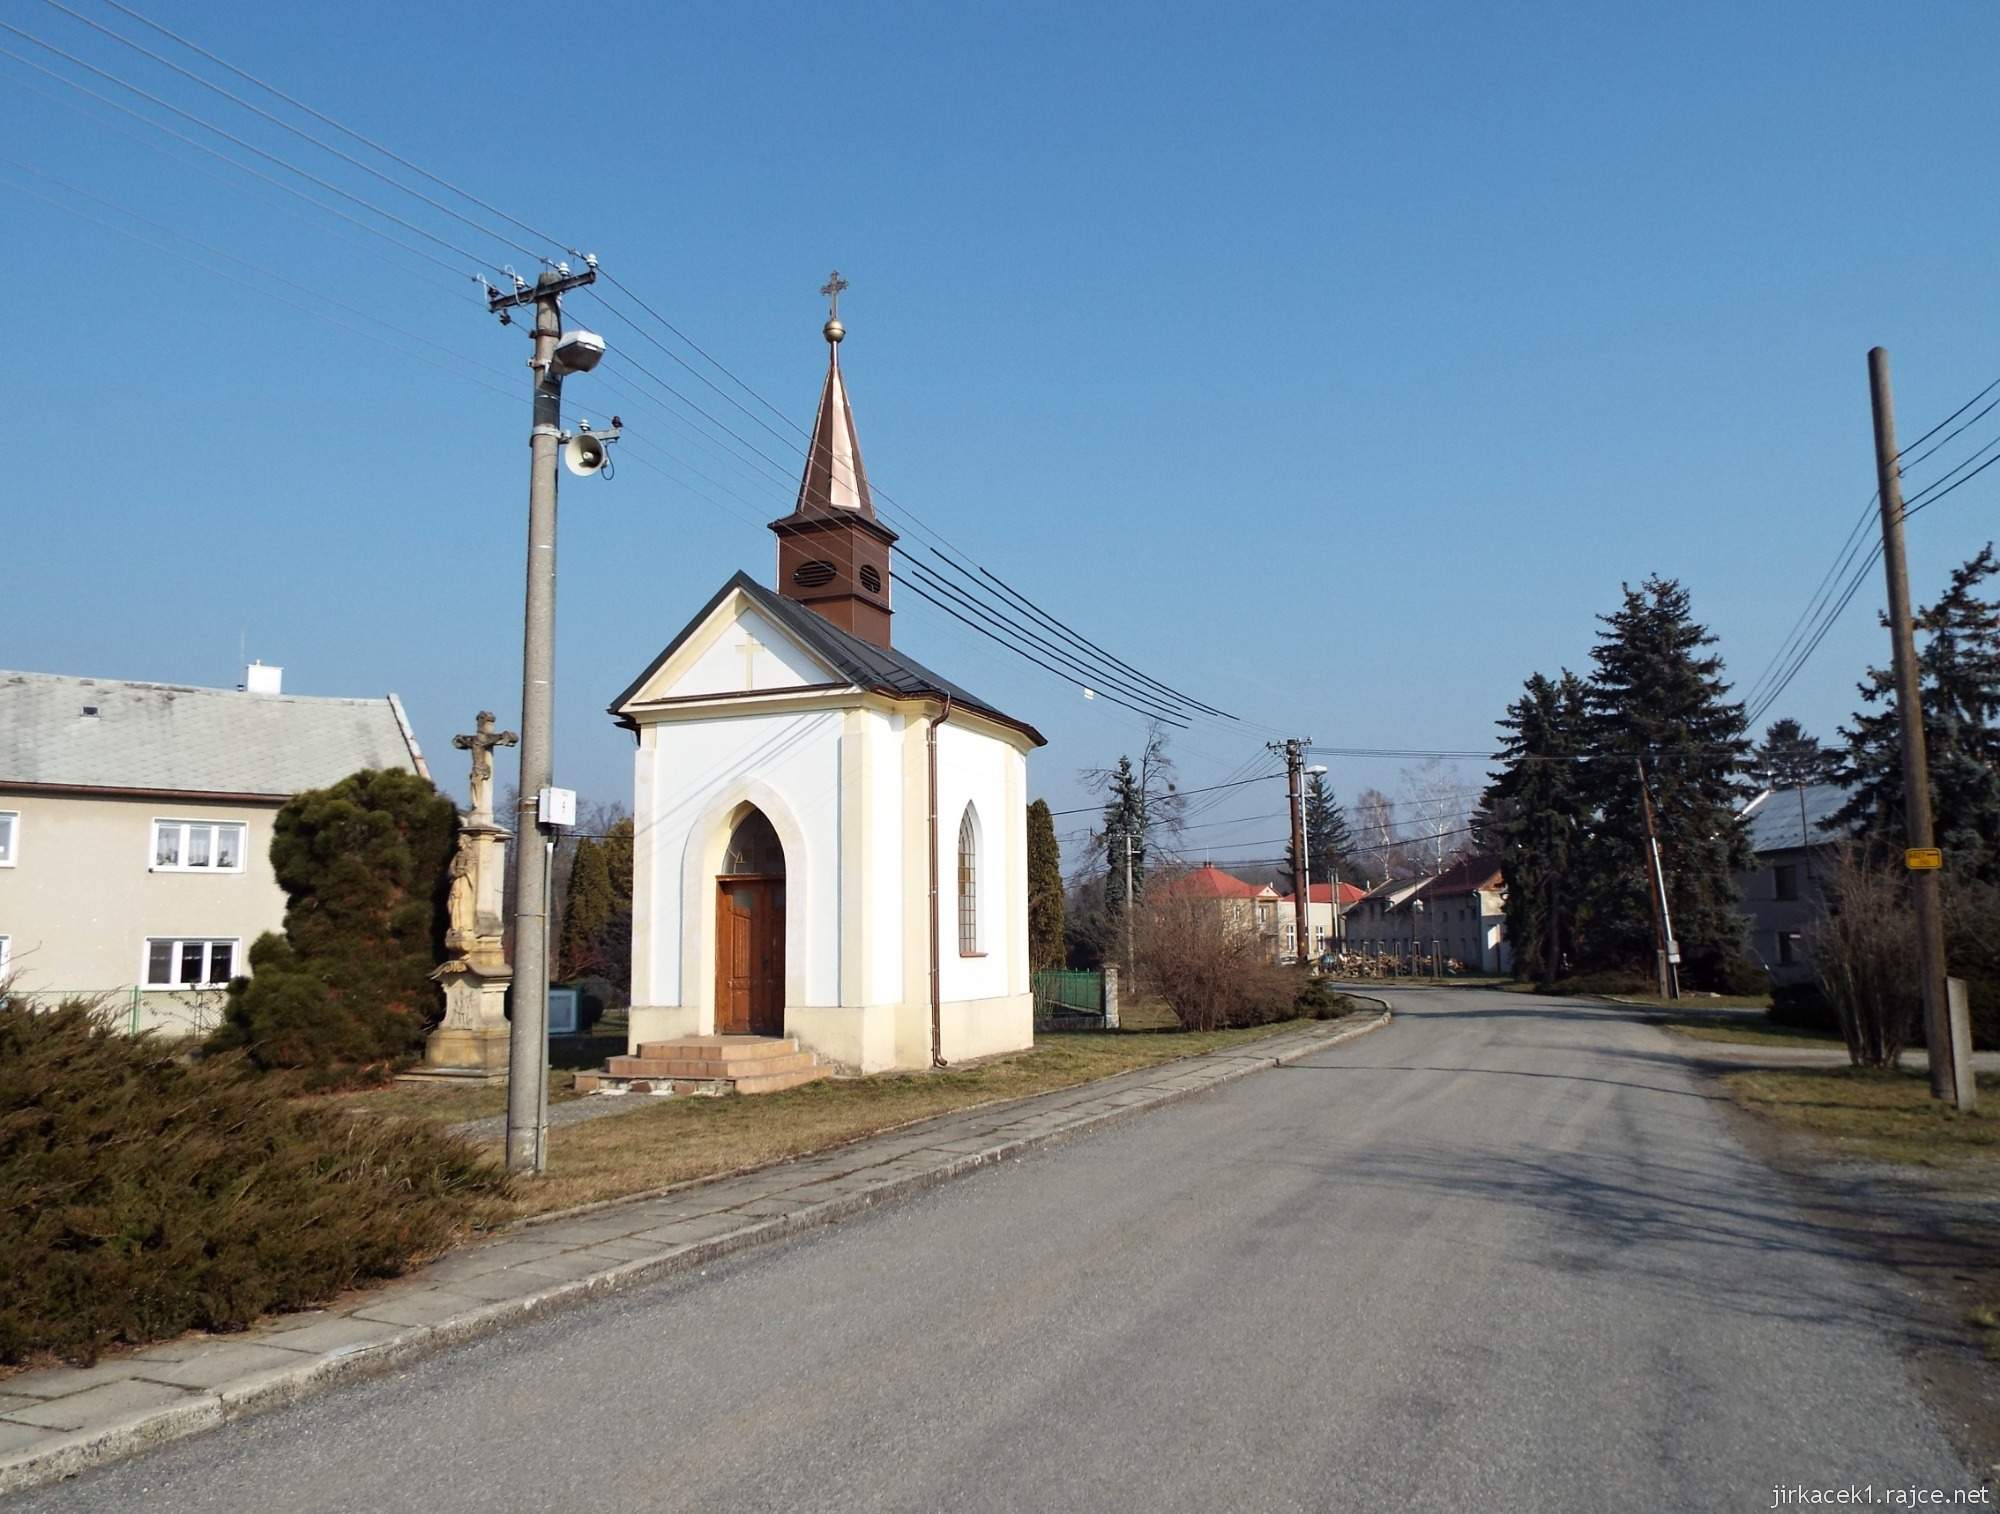 D - Březové - kaple sv. Cyrila a Metoděje 01 - celkový pohled